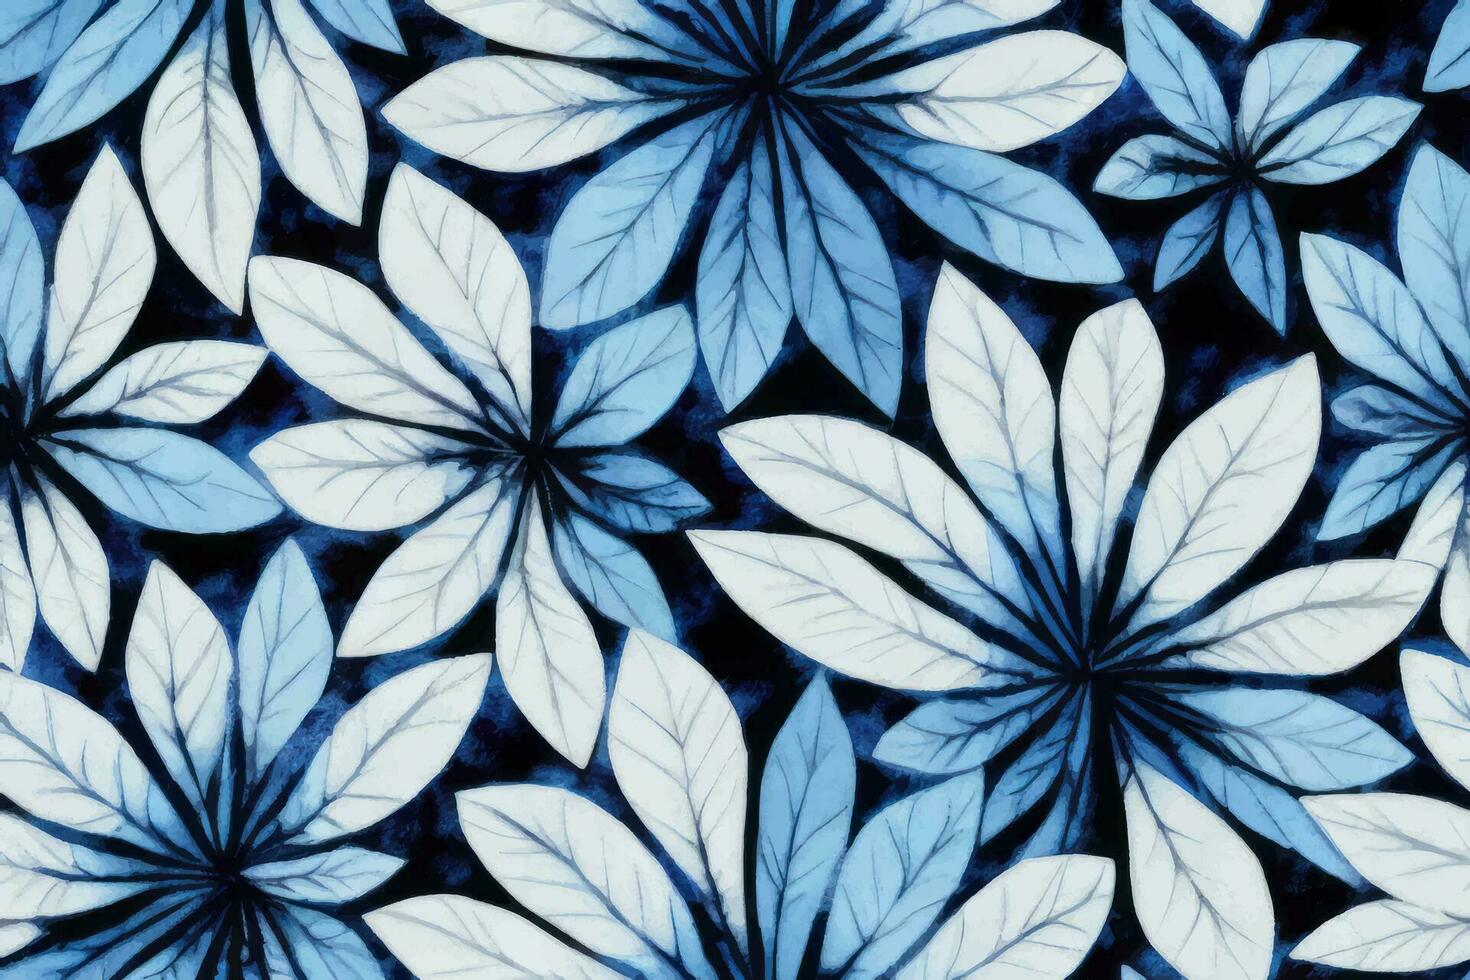 Shibori tye mourir abstrait attacher colorant peindre brosse batik encre tourbillon spirale en tissu botanique rétro cercle conception géométrique répéter dessin tuile vecteur vert marron foncé bleu couleurs , blanc bleu fleur